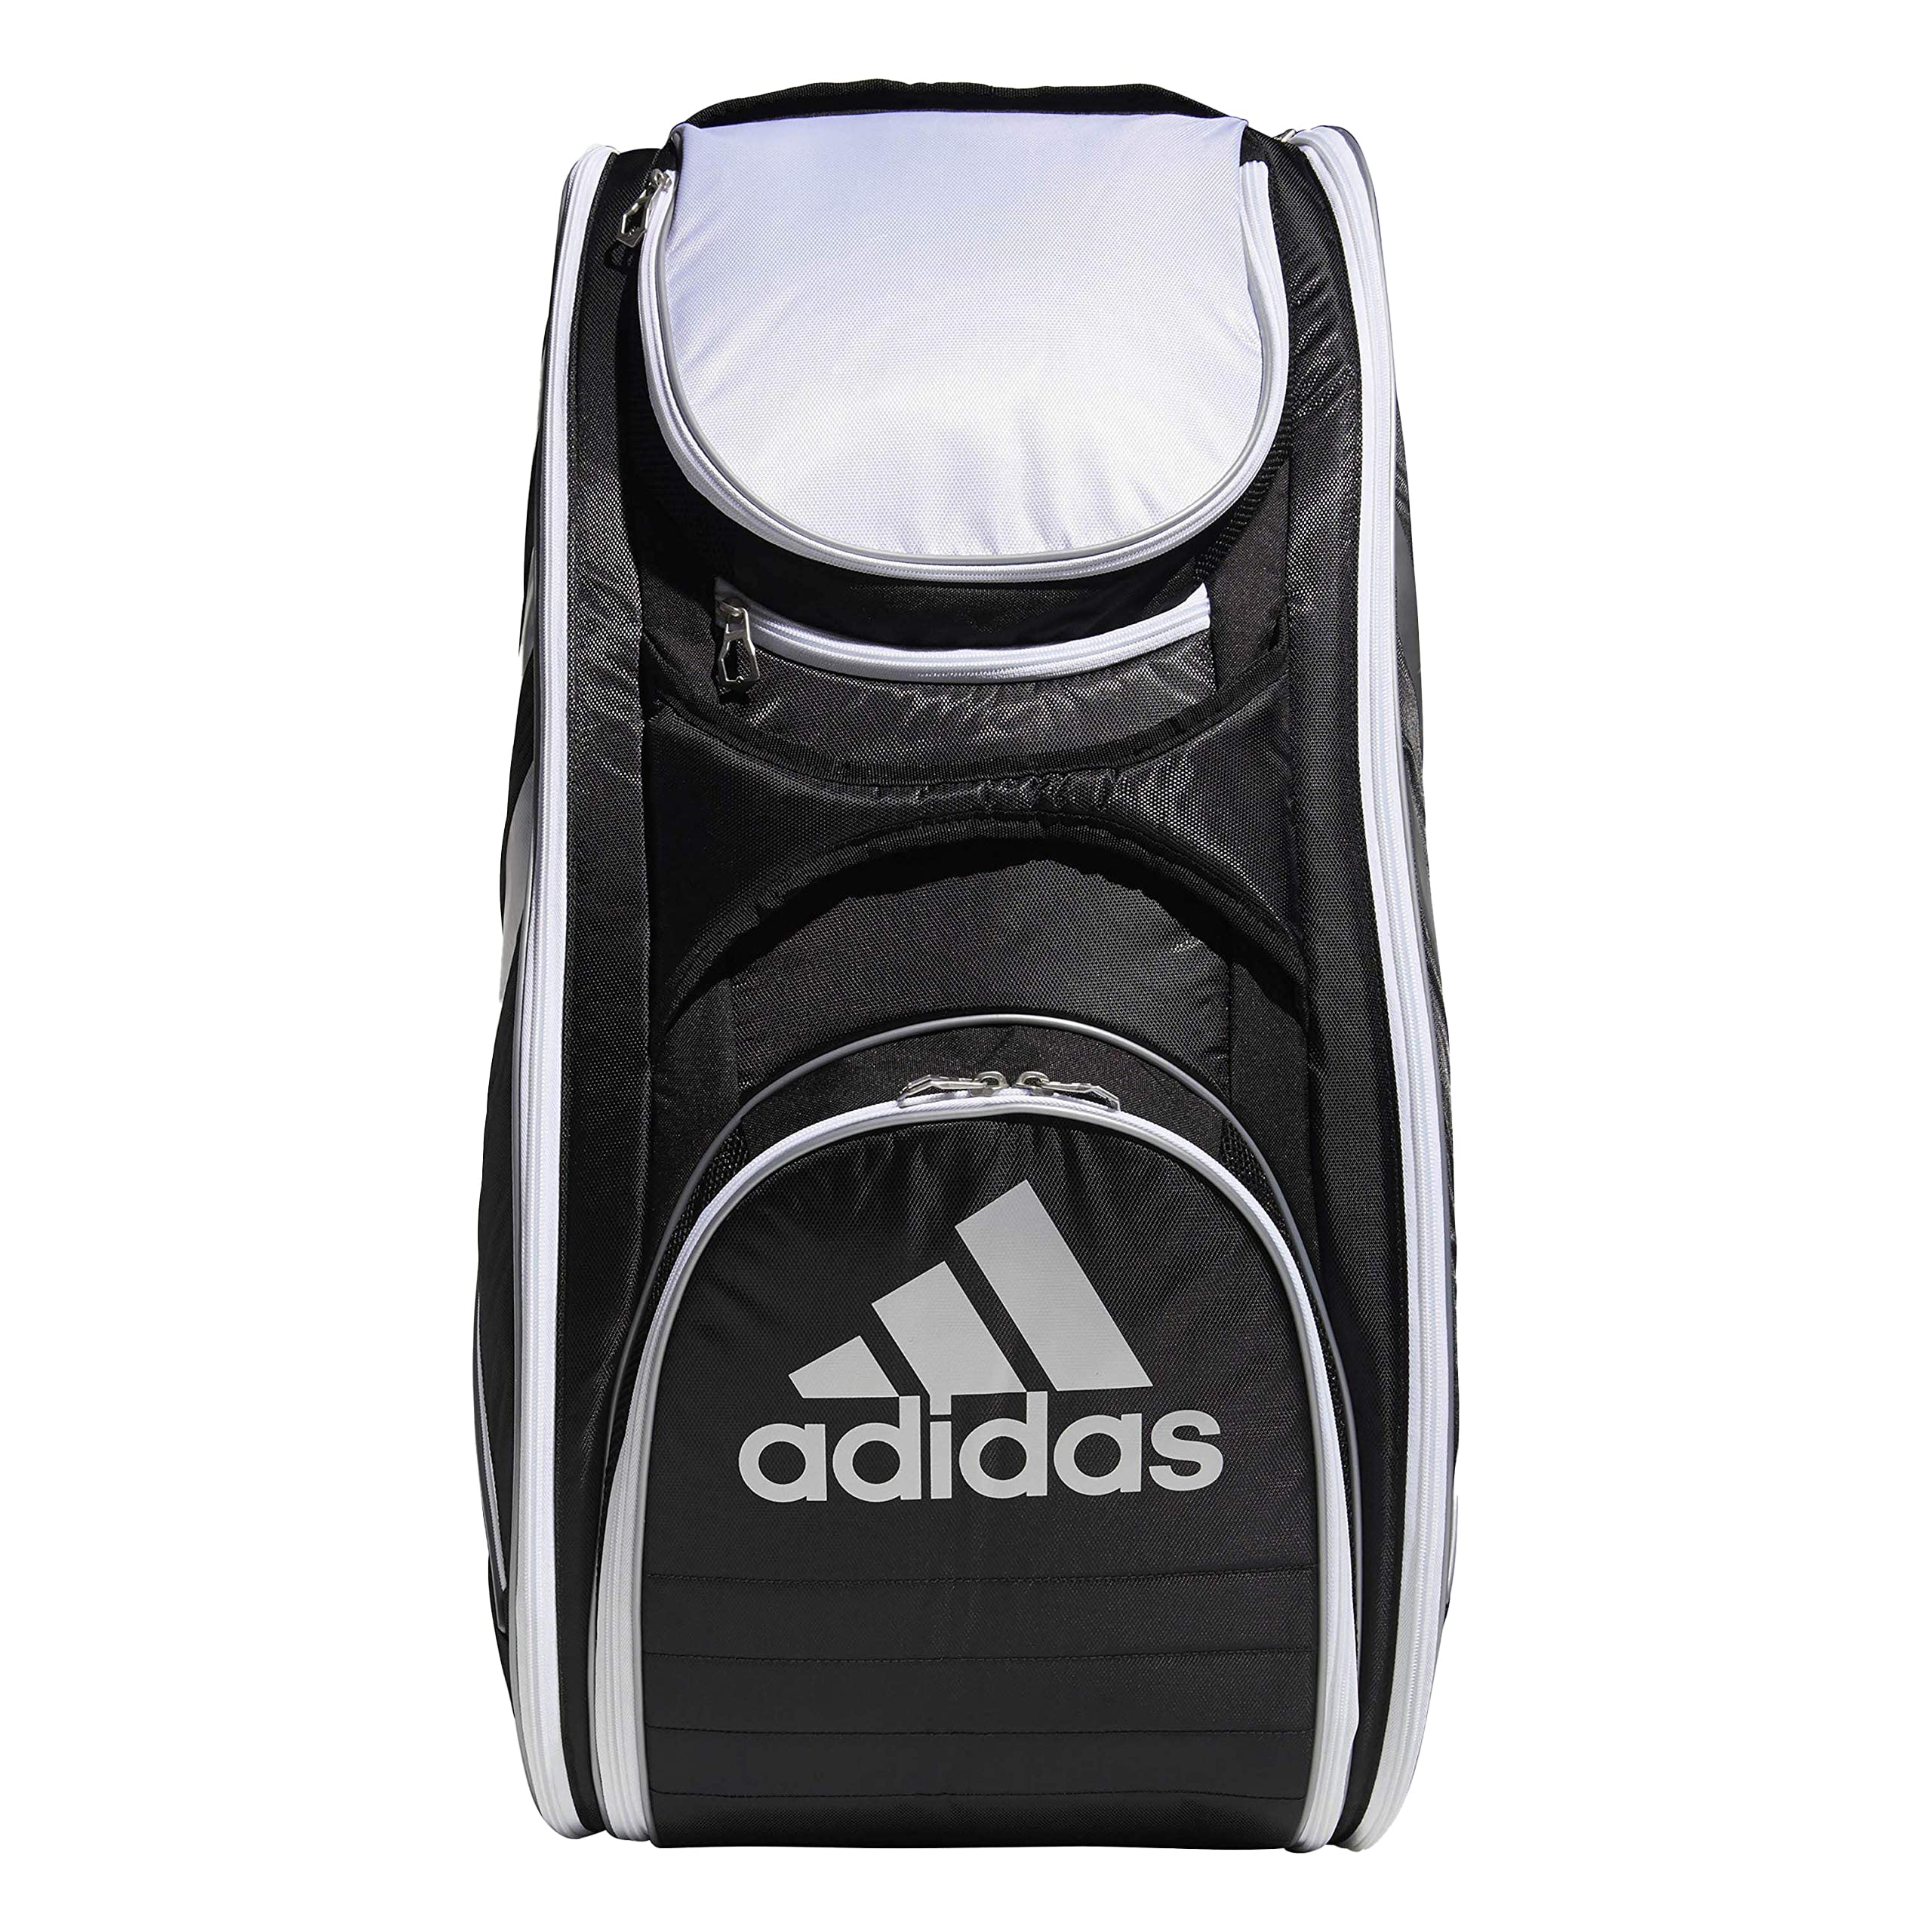 Adidas Barricade 2 Racquet Tennis Bag Black & Purple super clean | eBay